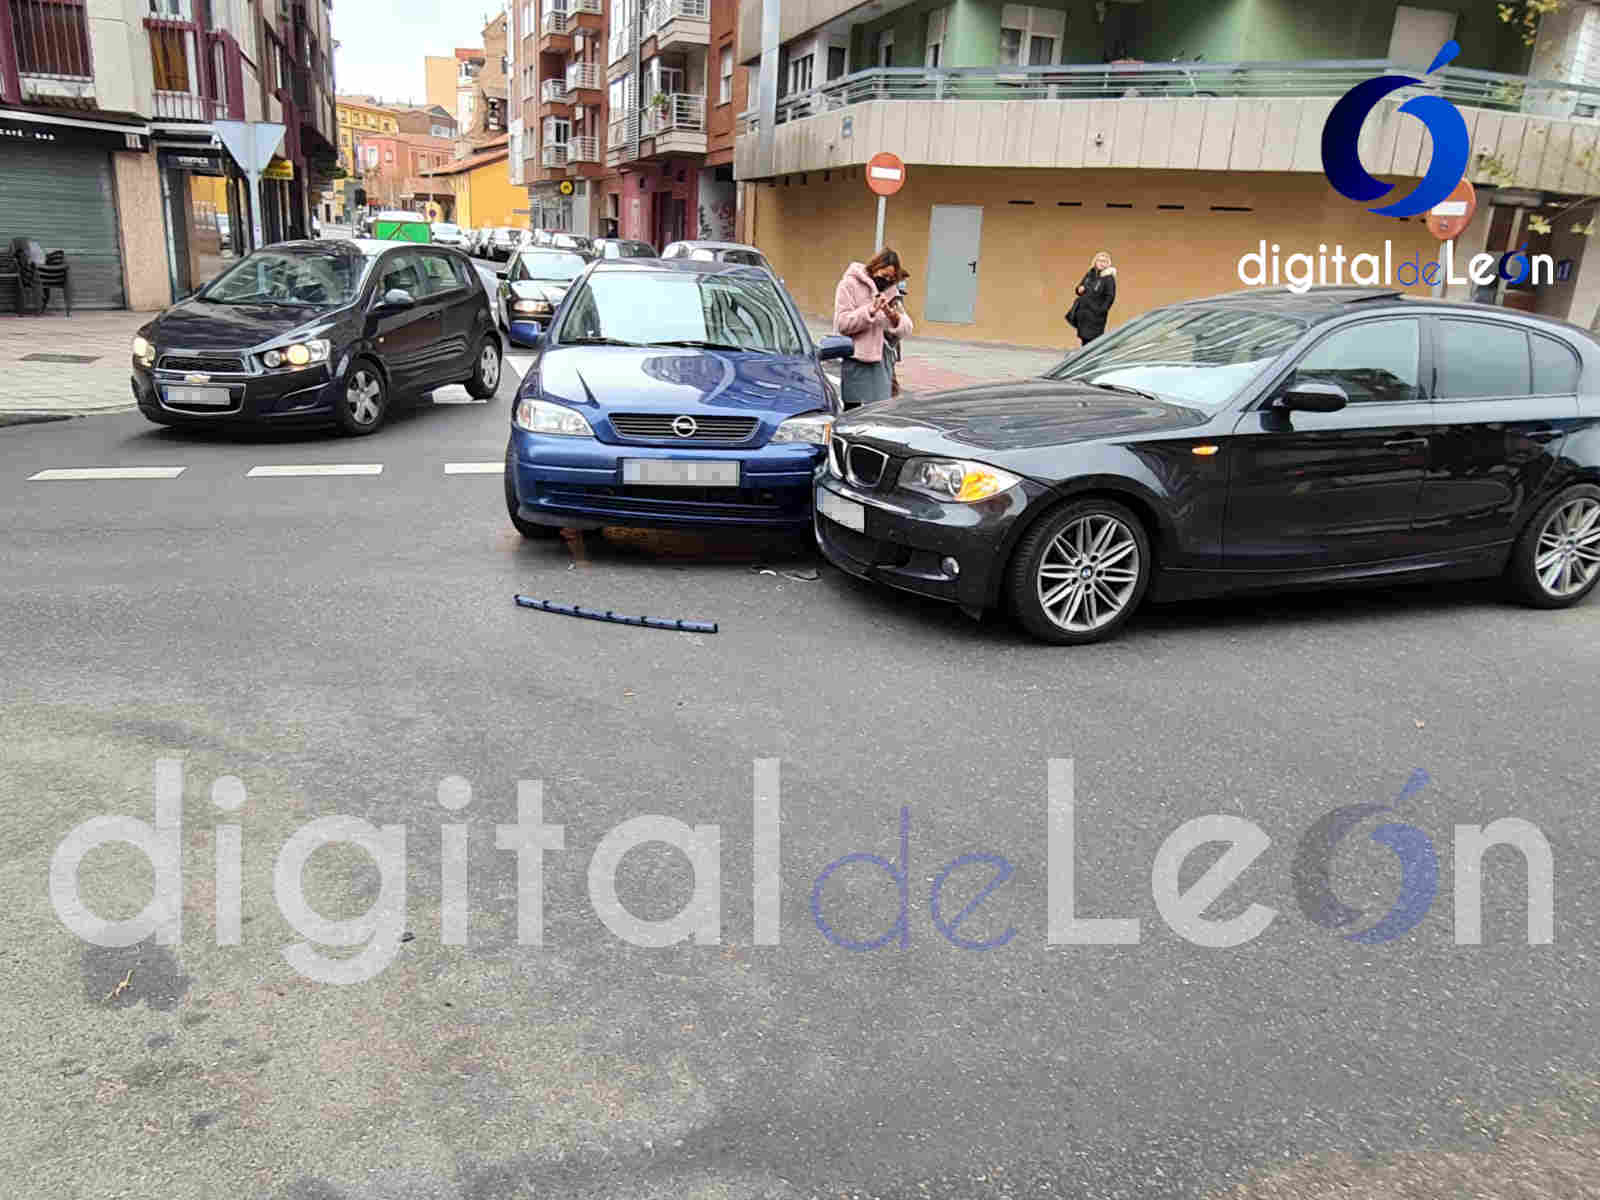 El caos circulatorio en la ciudad de León tras este accidente de tráfico 1